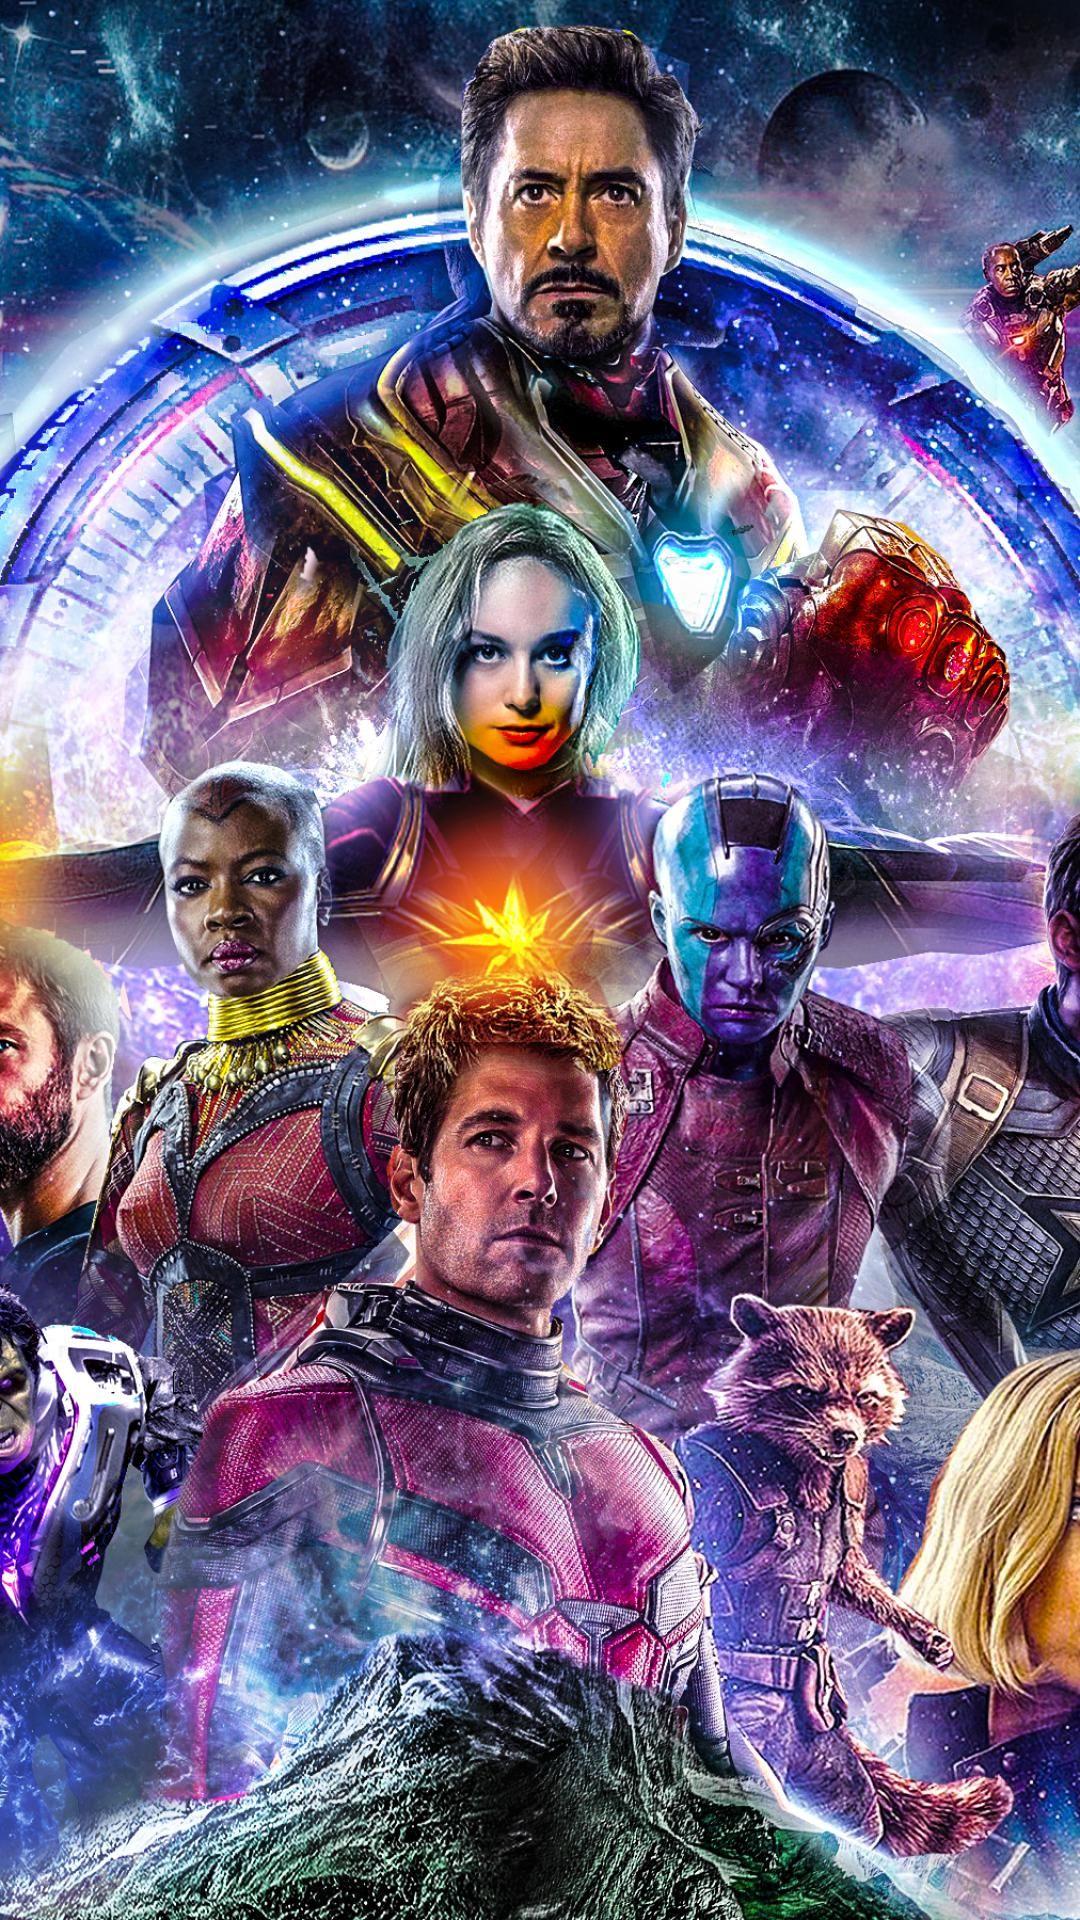 Avengers Endgame 2019 Wallpaper for mobile phones